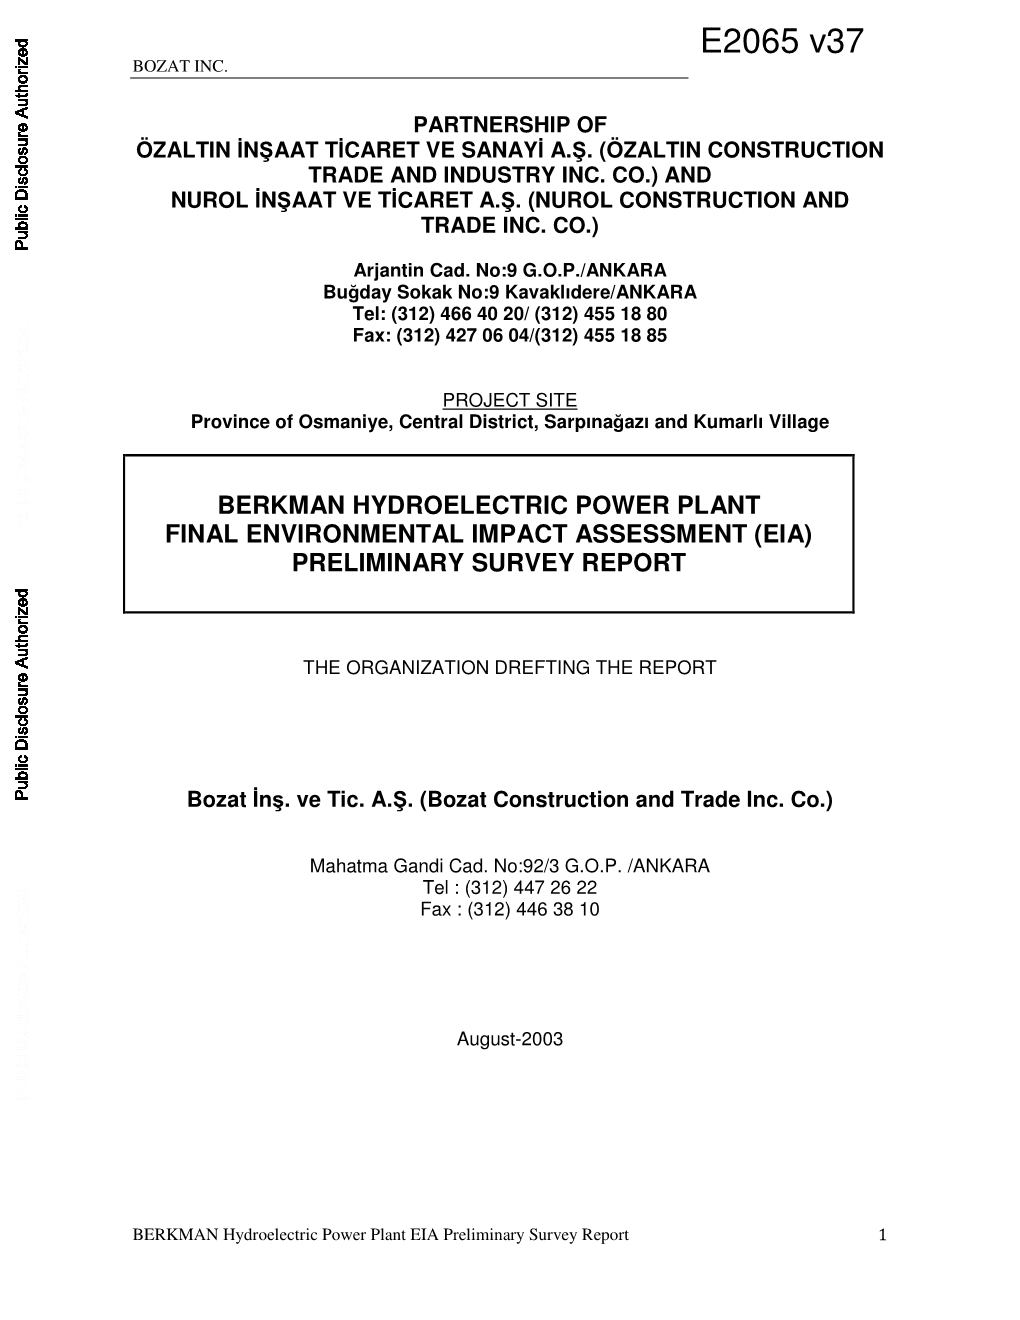 Berkman Hydroelectric Power Plant Final Environmental Impact Assessment